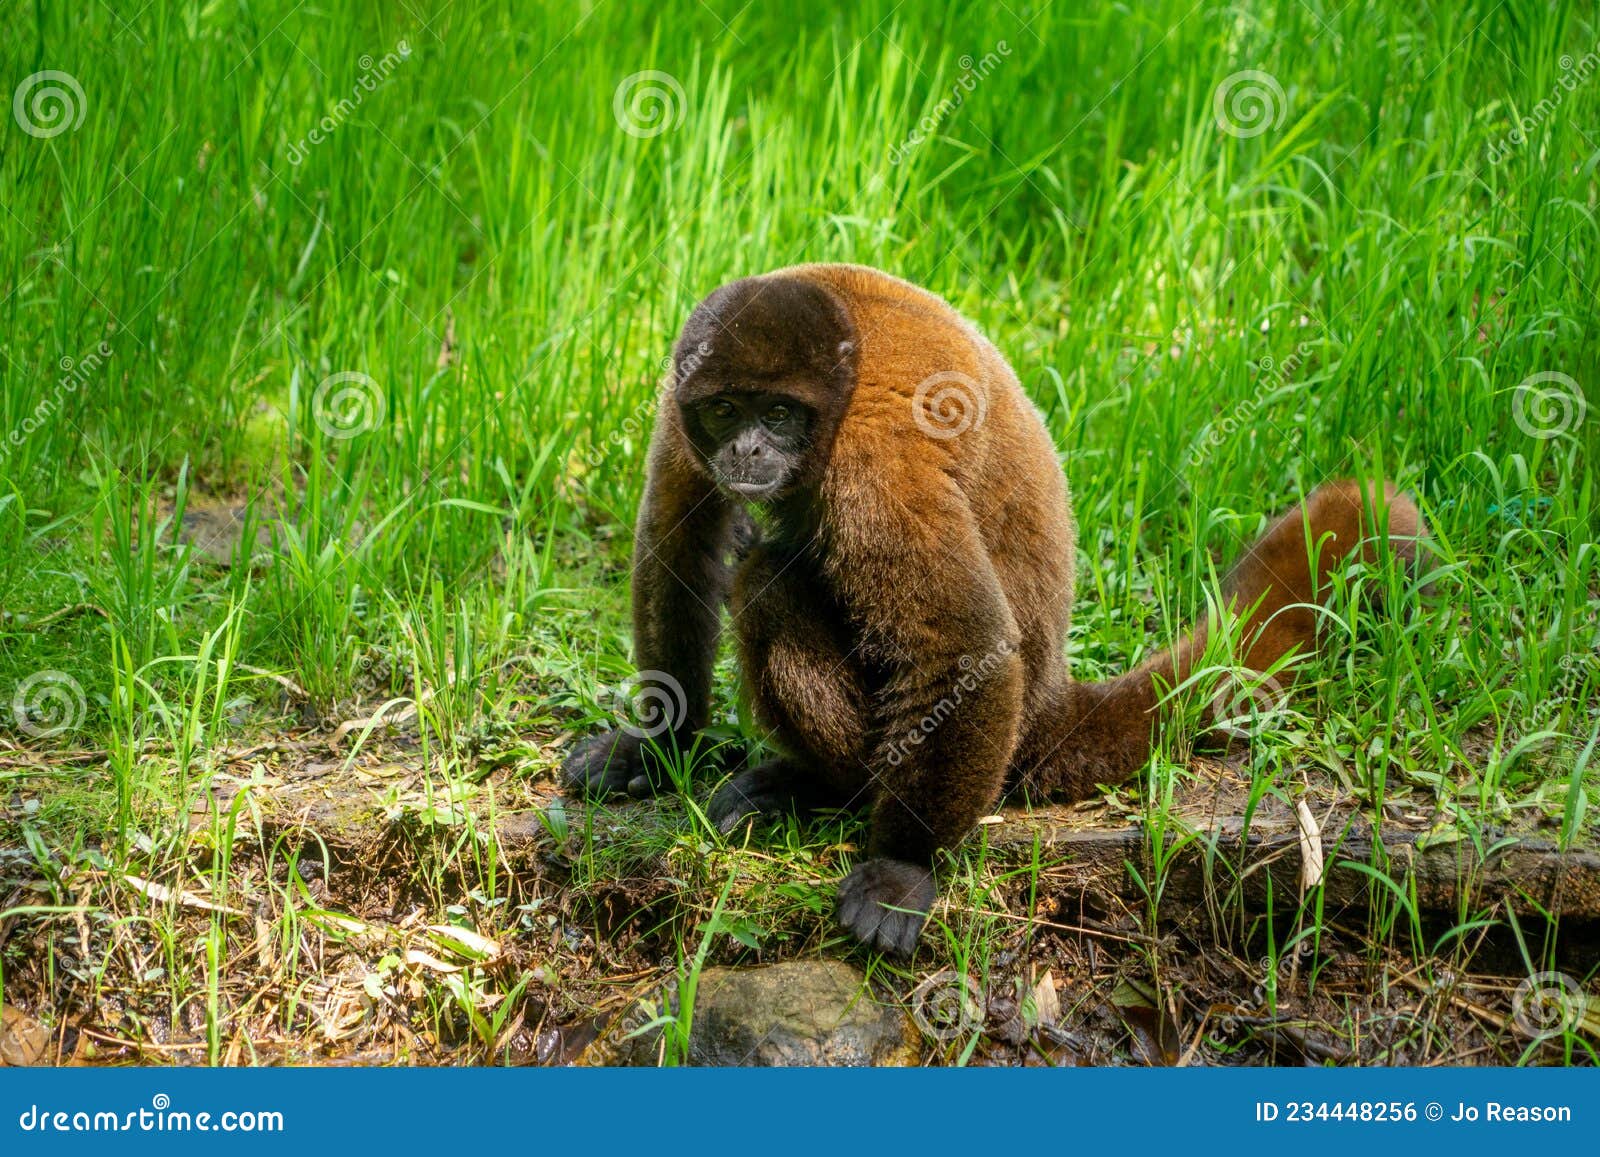 chorongo monkey, amazonia, ecuador